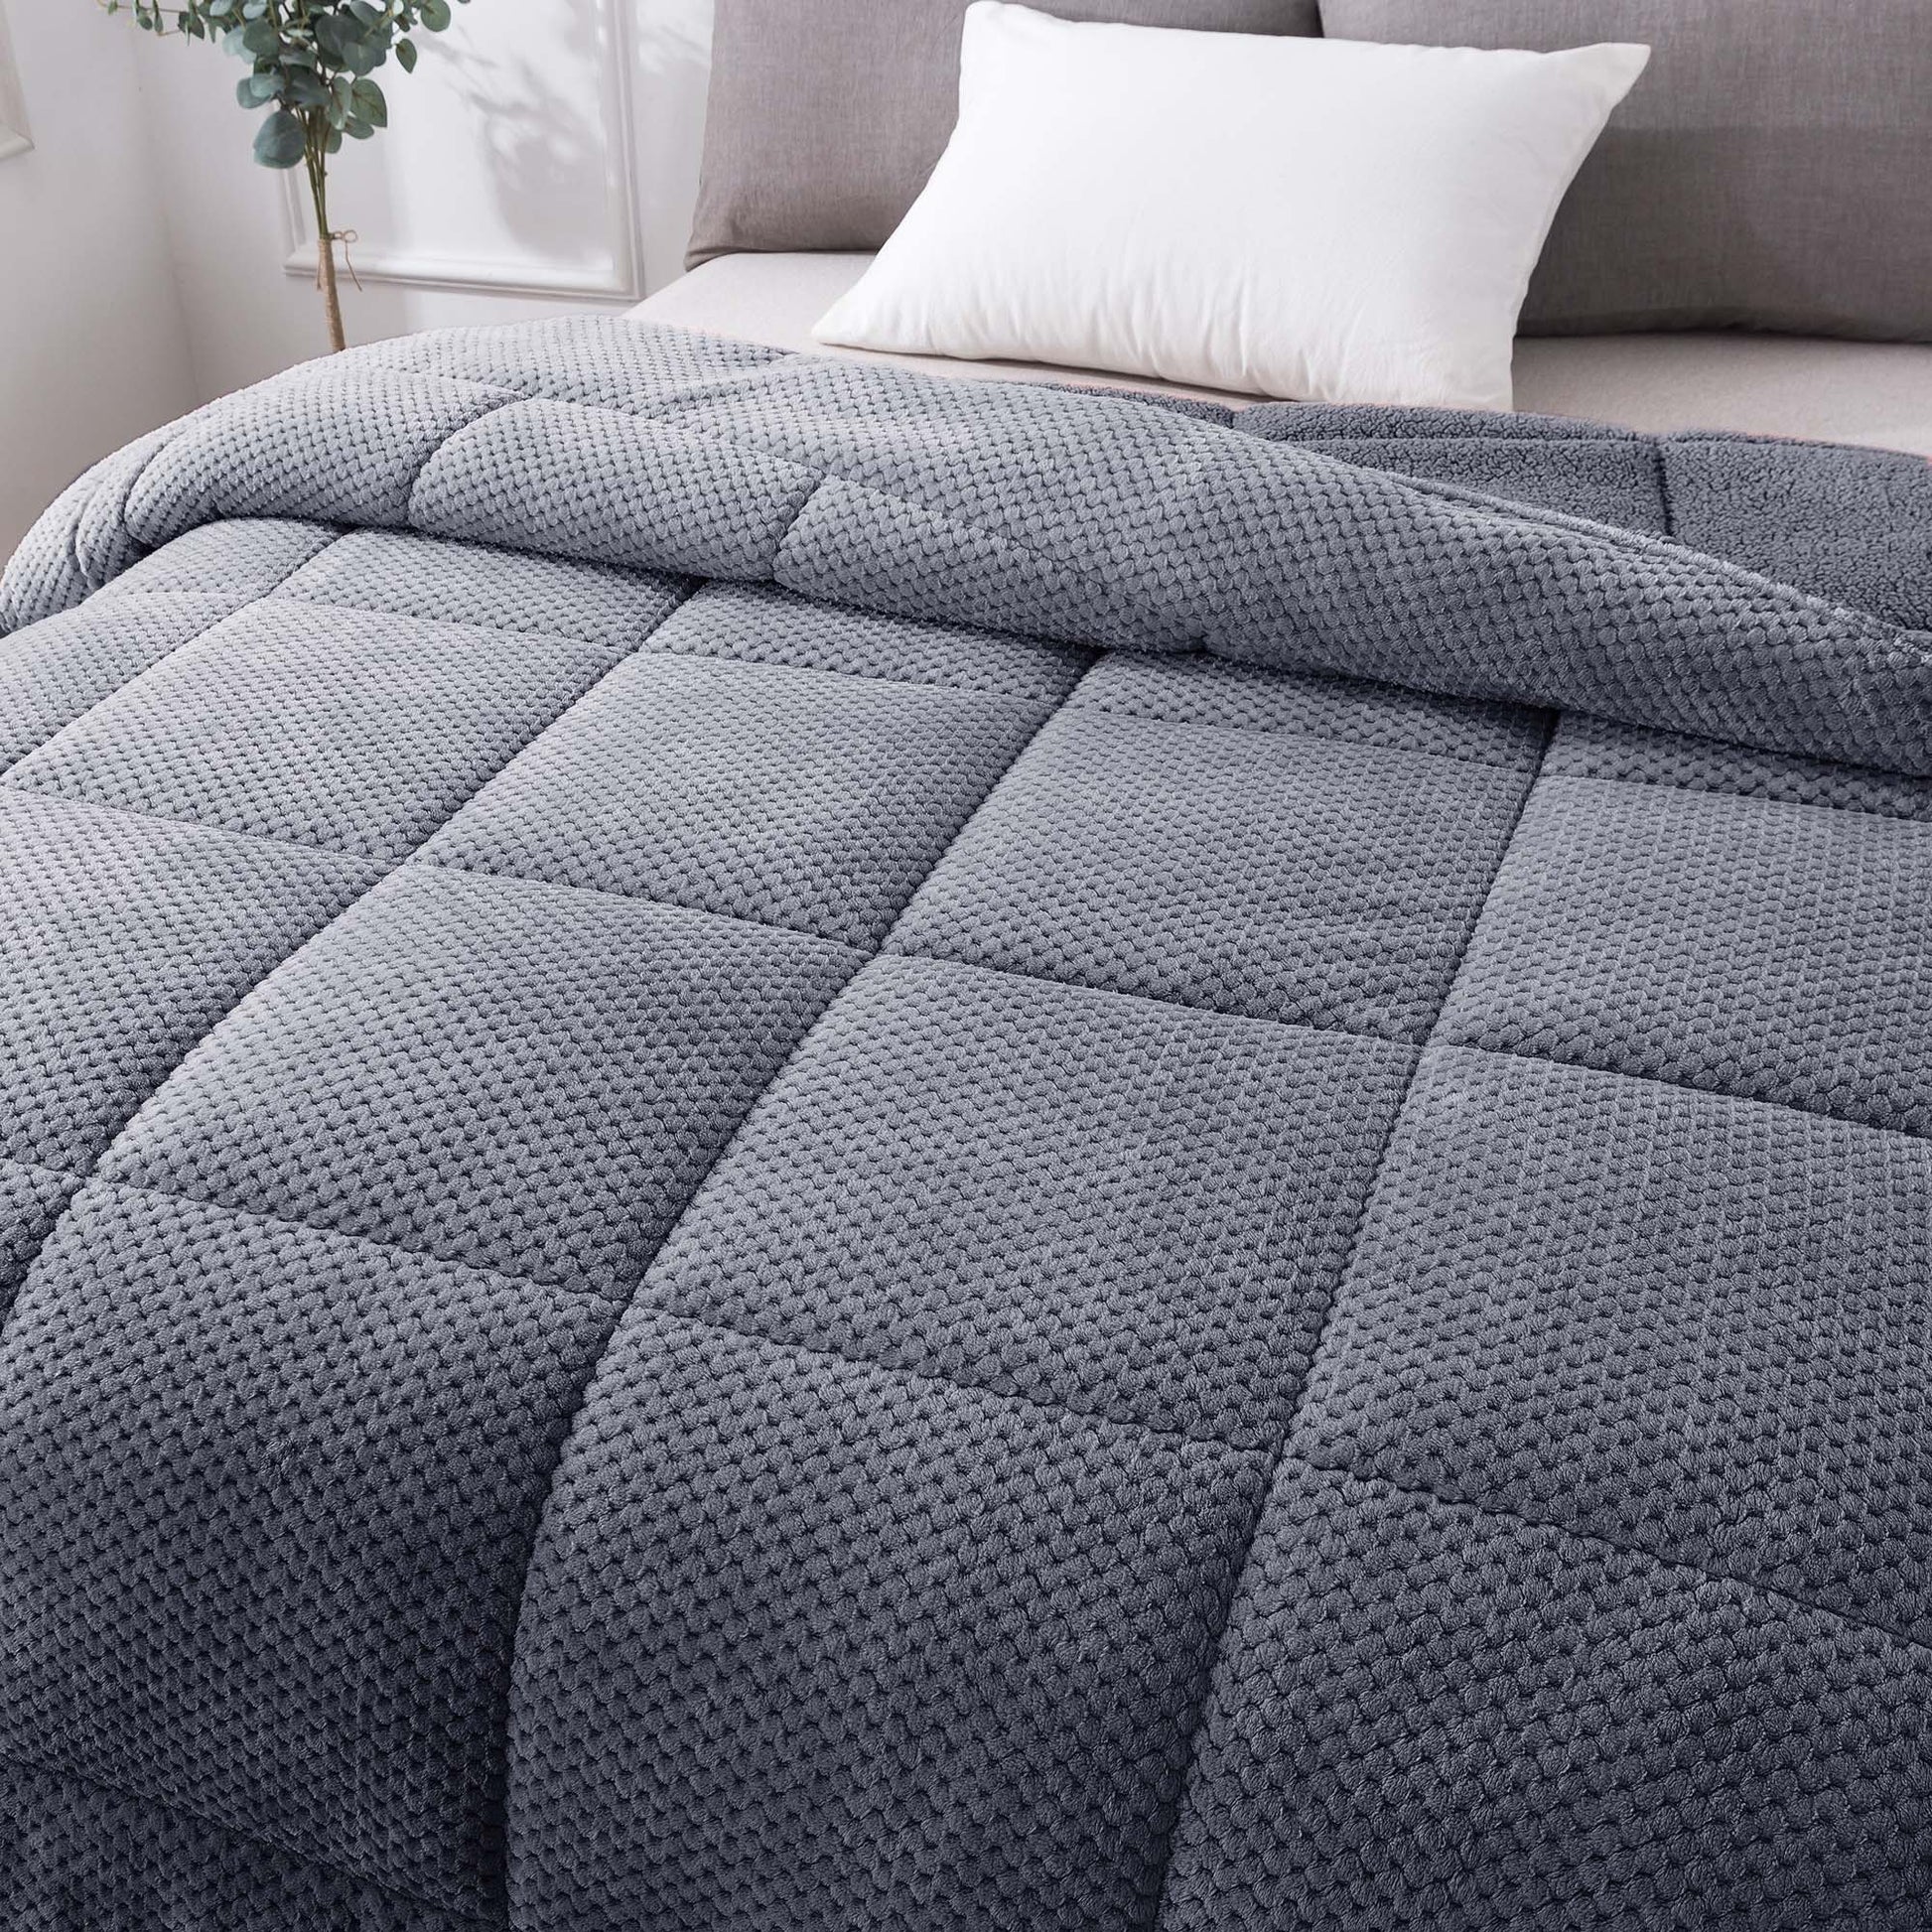 soft sherpa comforter warm kasentex ugg fluffy plush dark grey